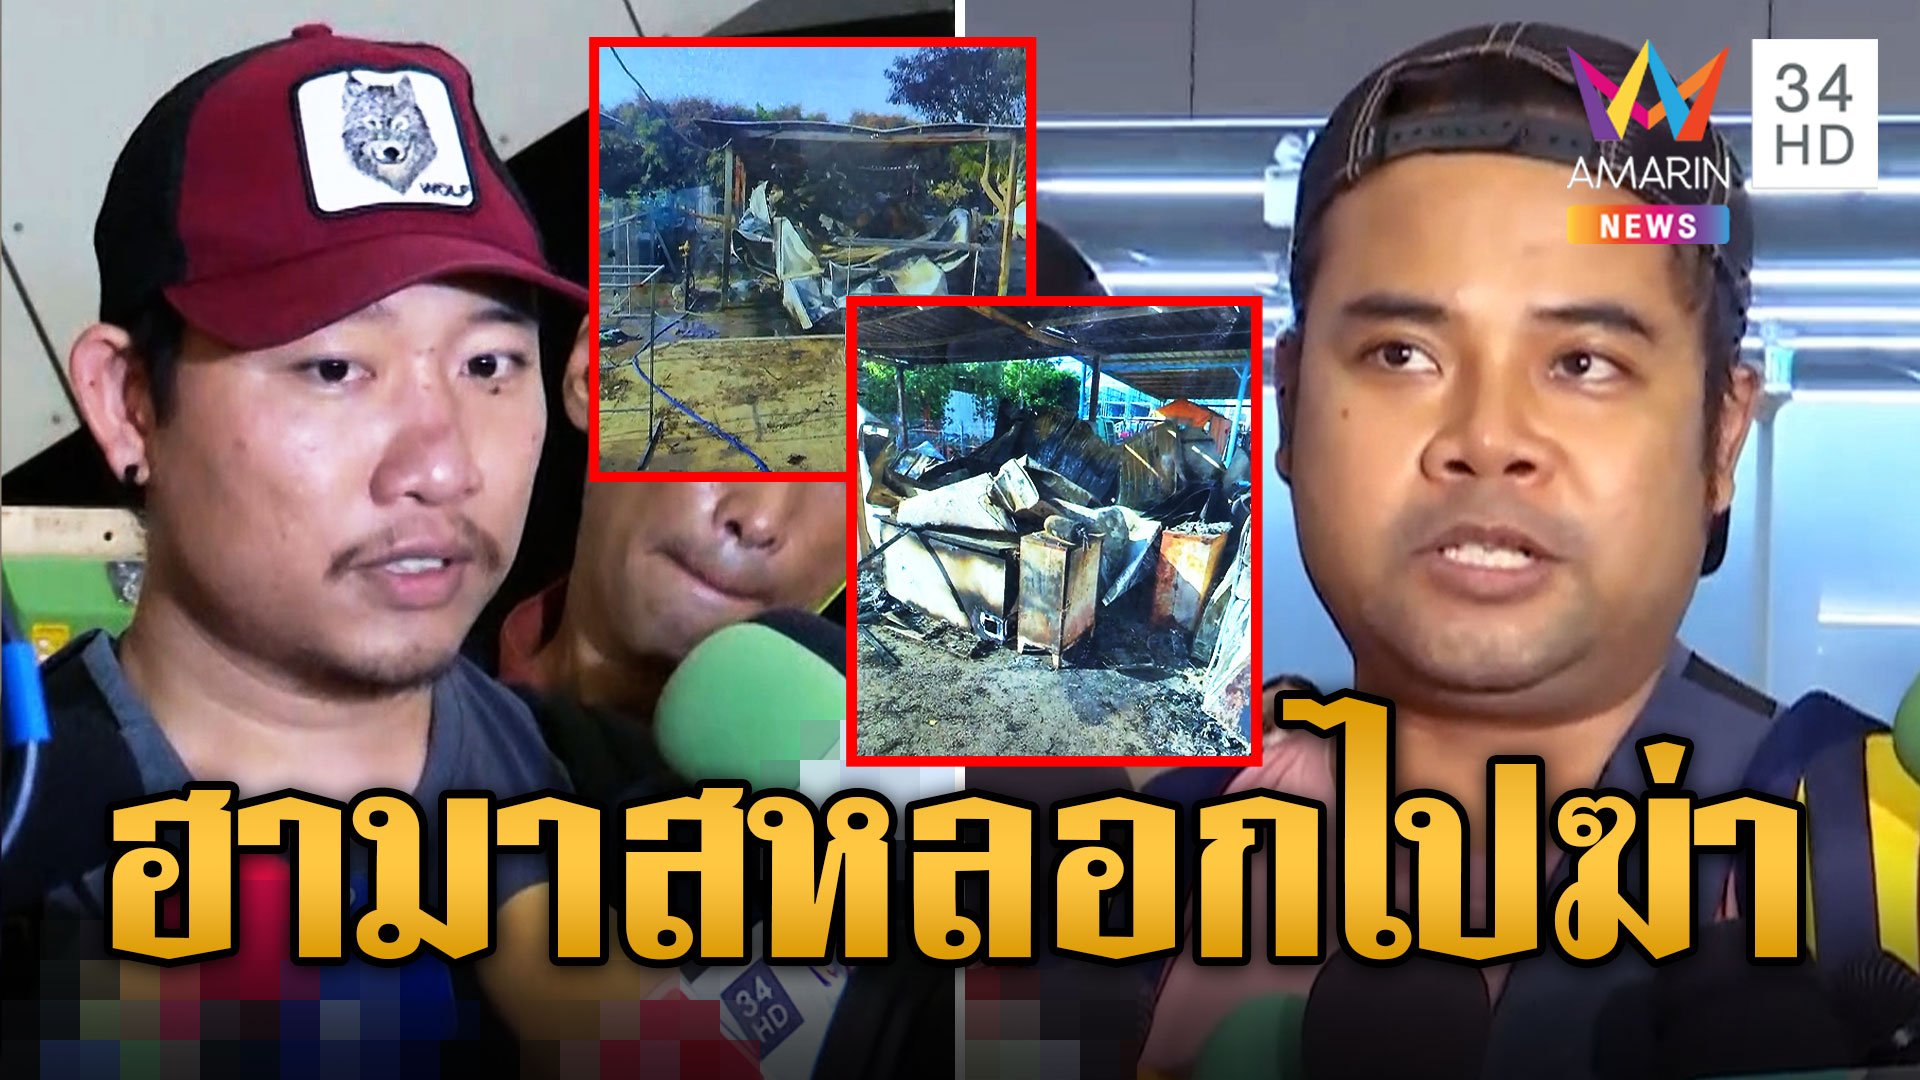 หนุ่มเล่านาทีหนีตายฮามาสพูดไทยหลอกไปฆ่าทิ้ง บุกแคมป์เผาวอดหวังให้ตายทั้งเป็น | ข่าวอรุณอมรินทร์ | 14 ต.ค. 66 | AMARIN TVHD34